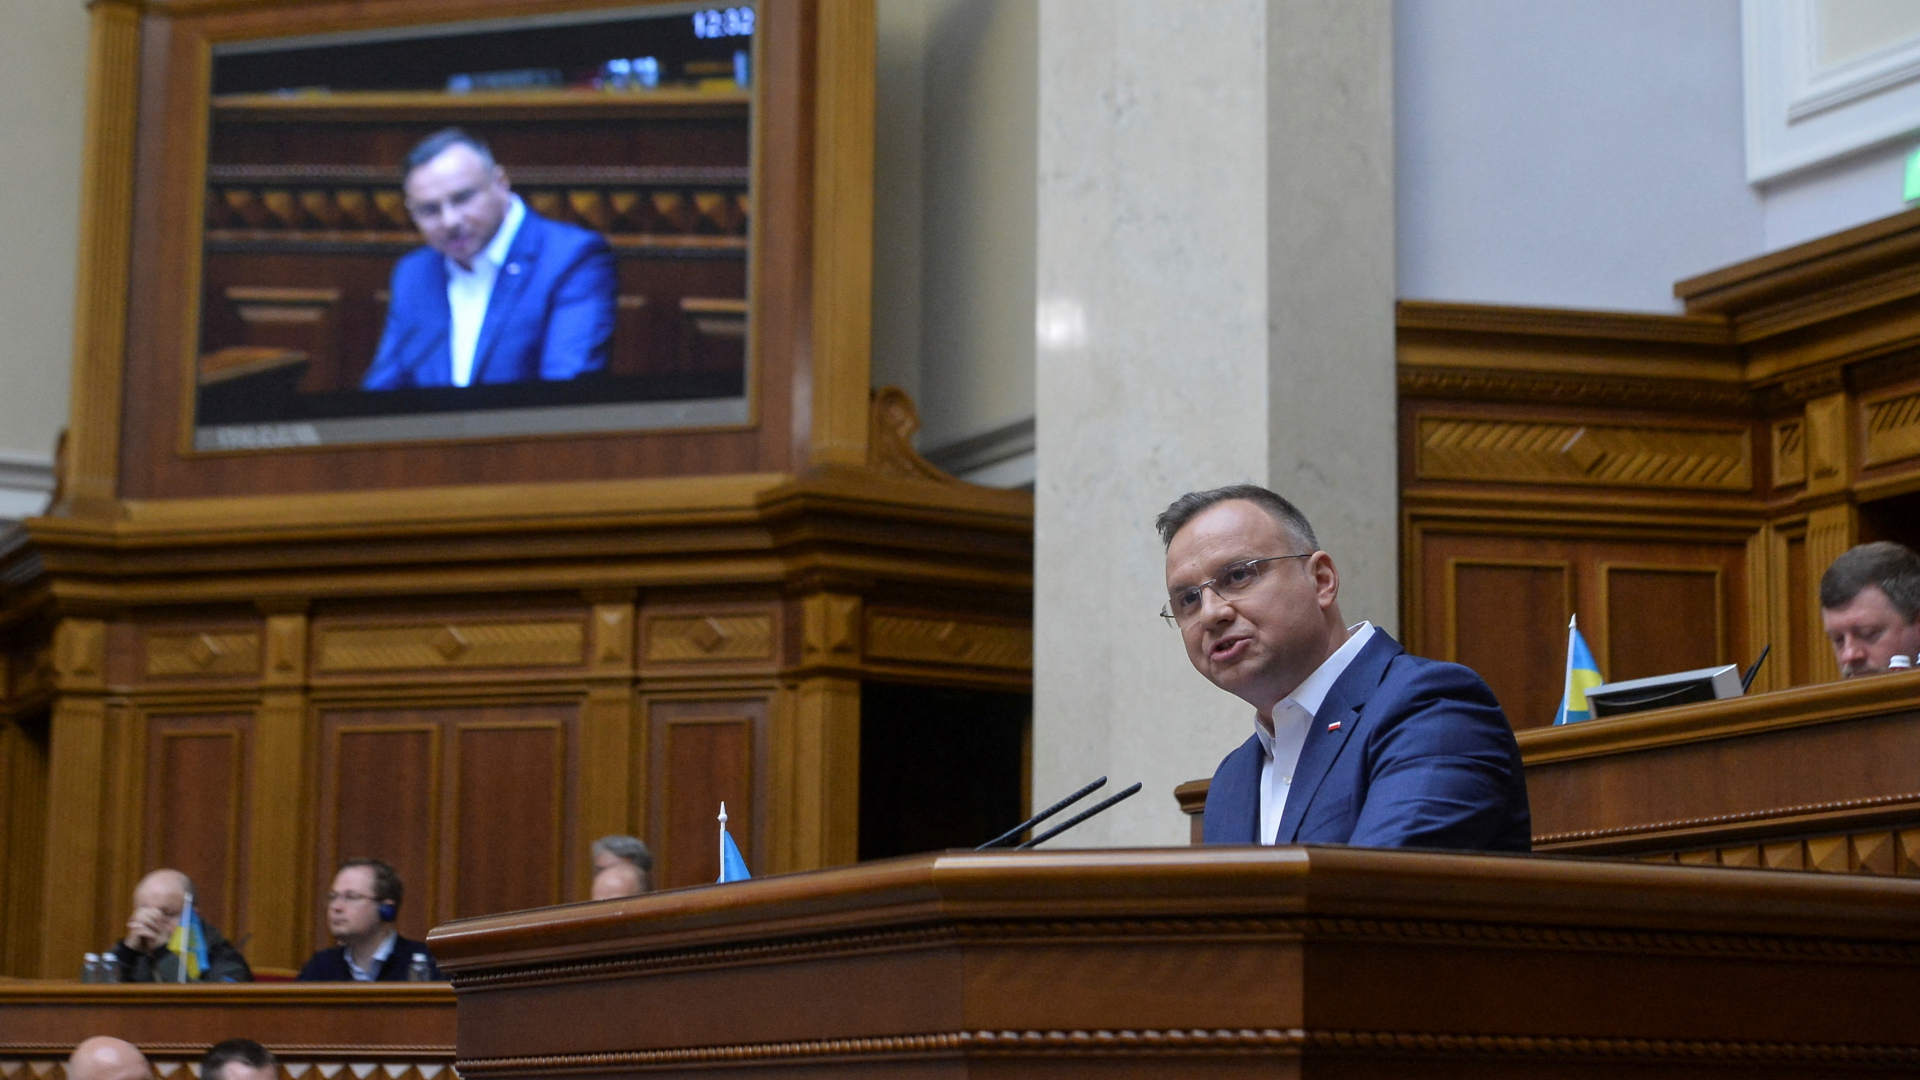 Andrzej Duda hält eine Rede im ukrainischen Parlament in Kiew. | REUTERS